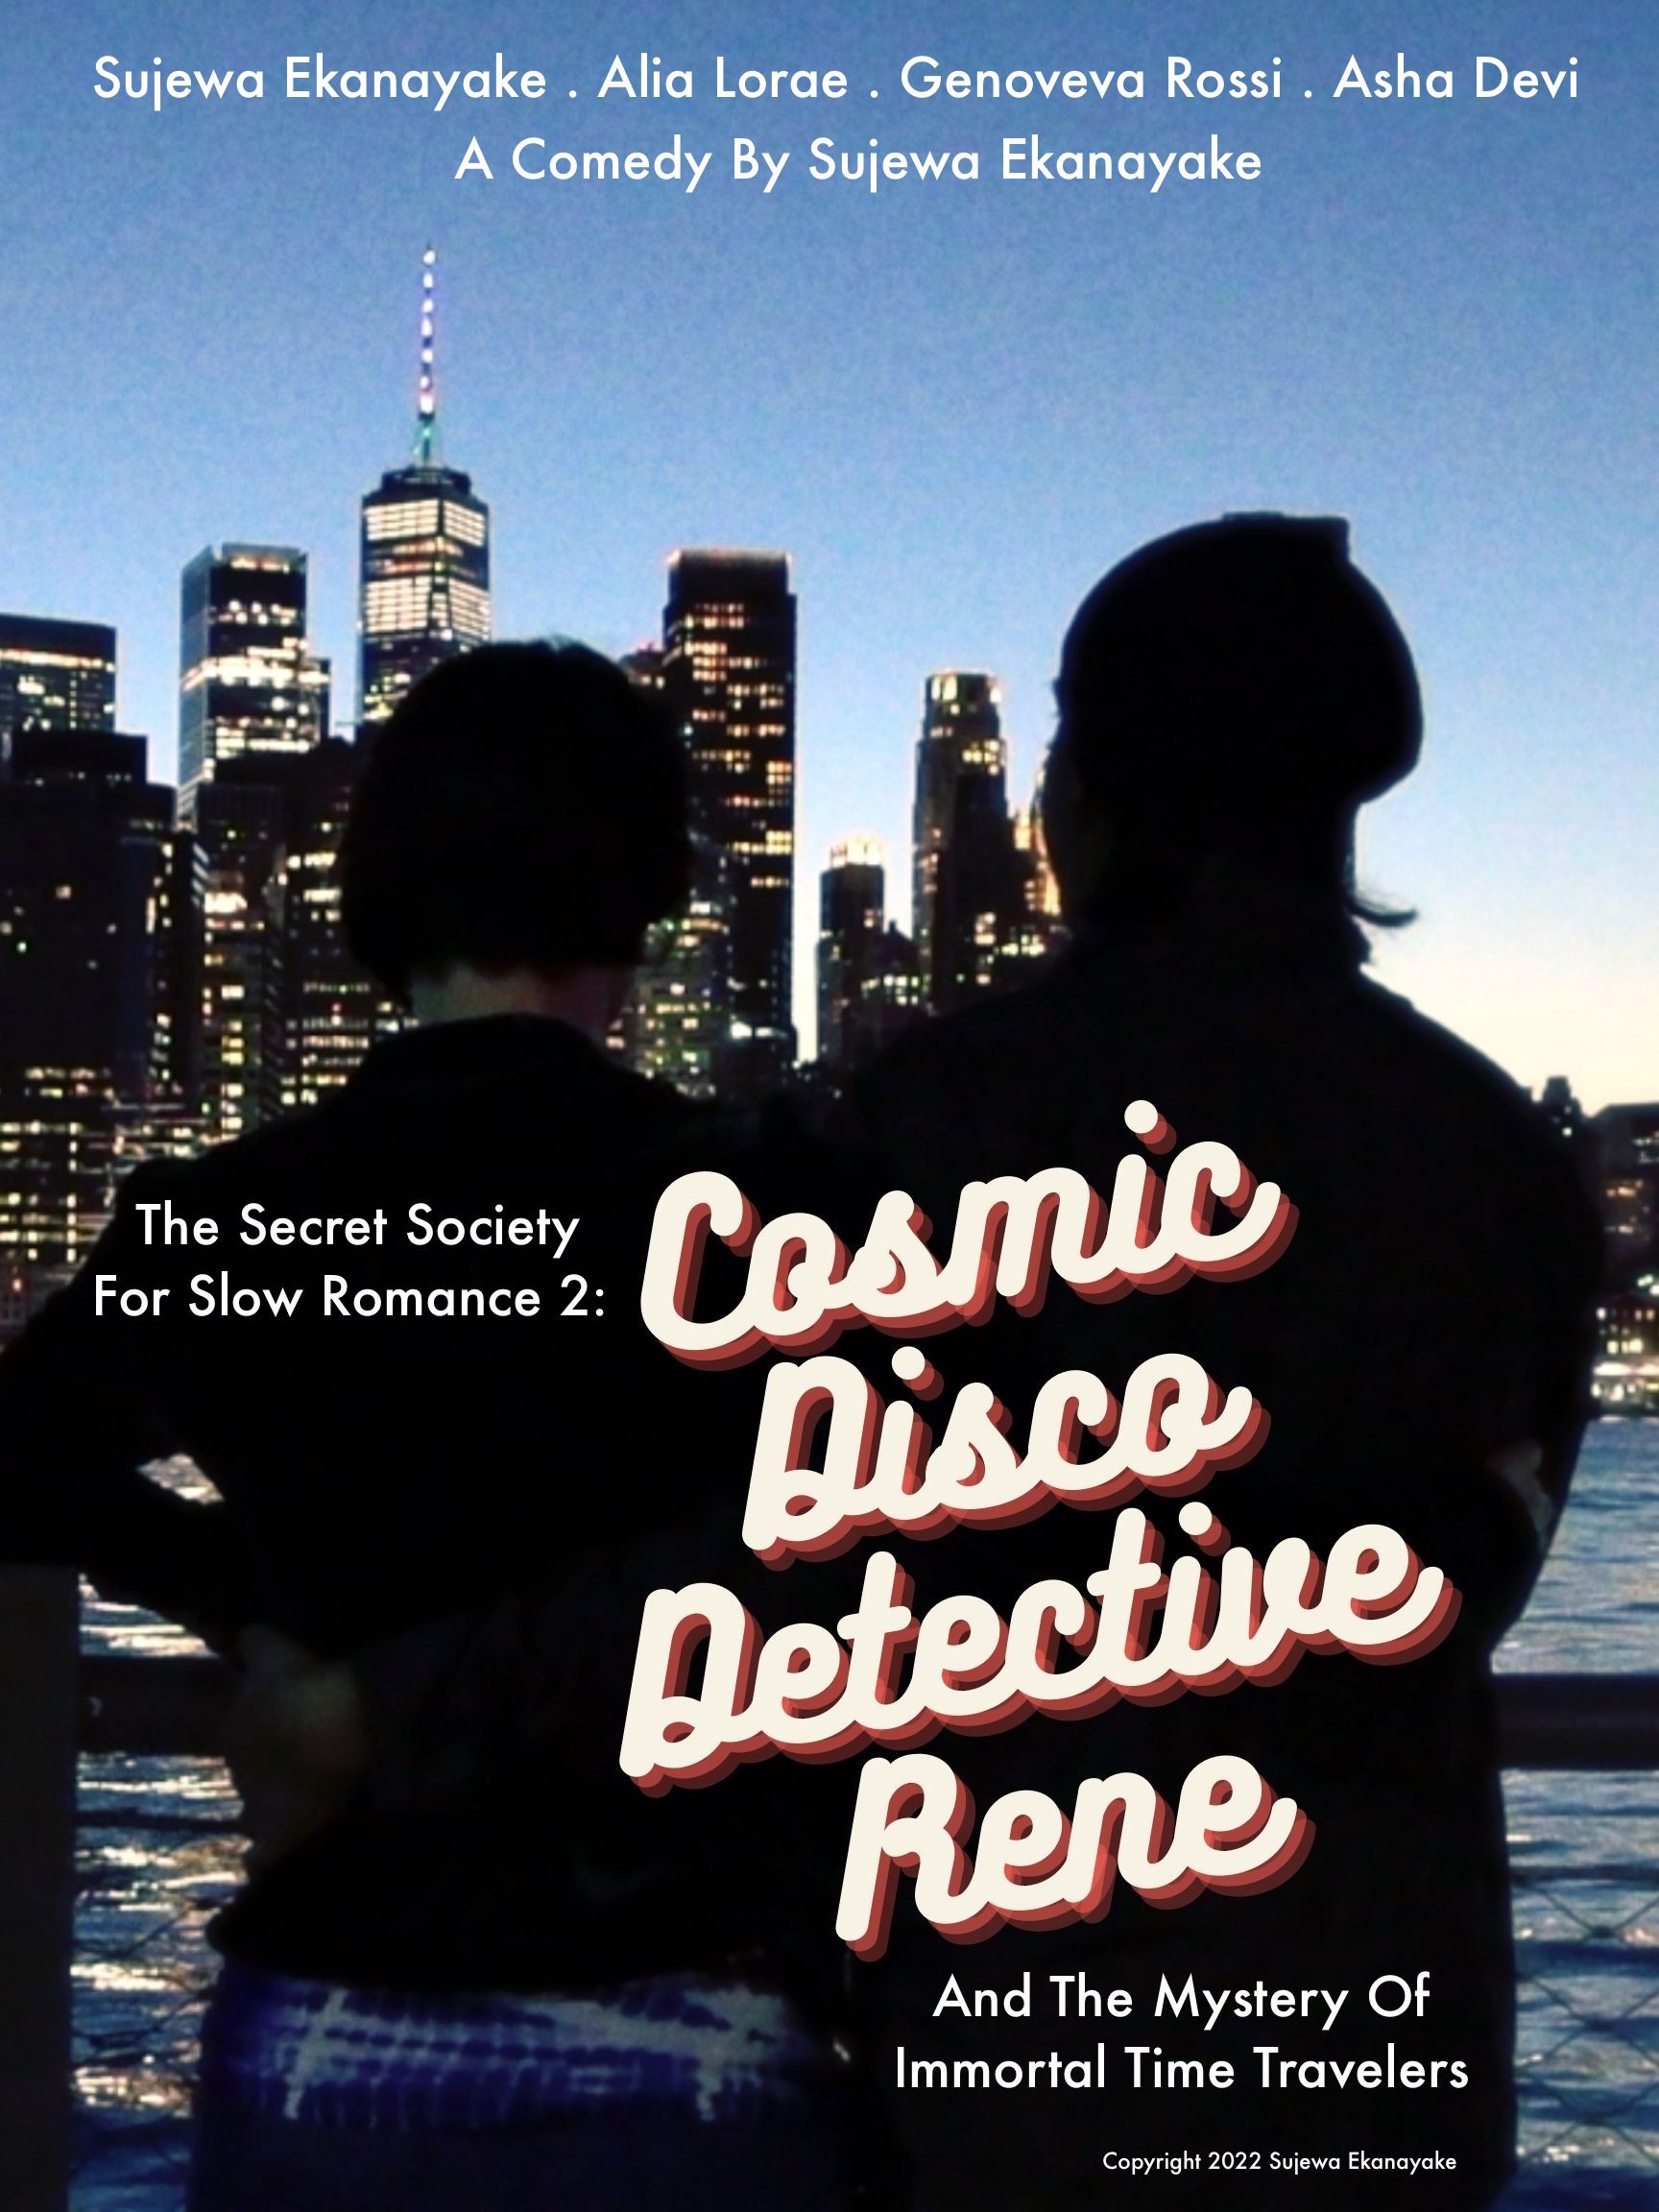 The Secret Society For Slow Romance 2: Cosmic Disco Detective Rene Ending Explained [SPOILER!]